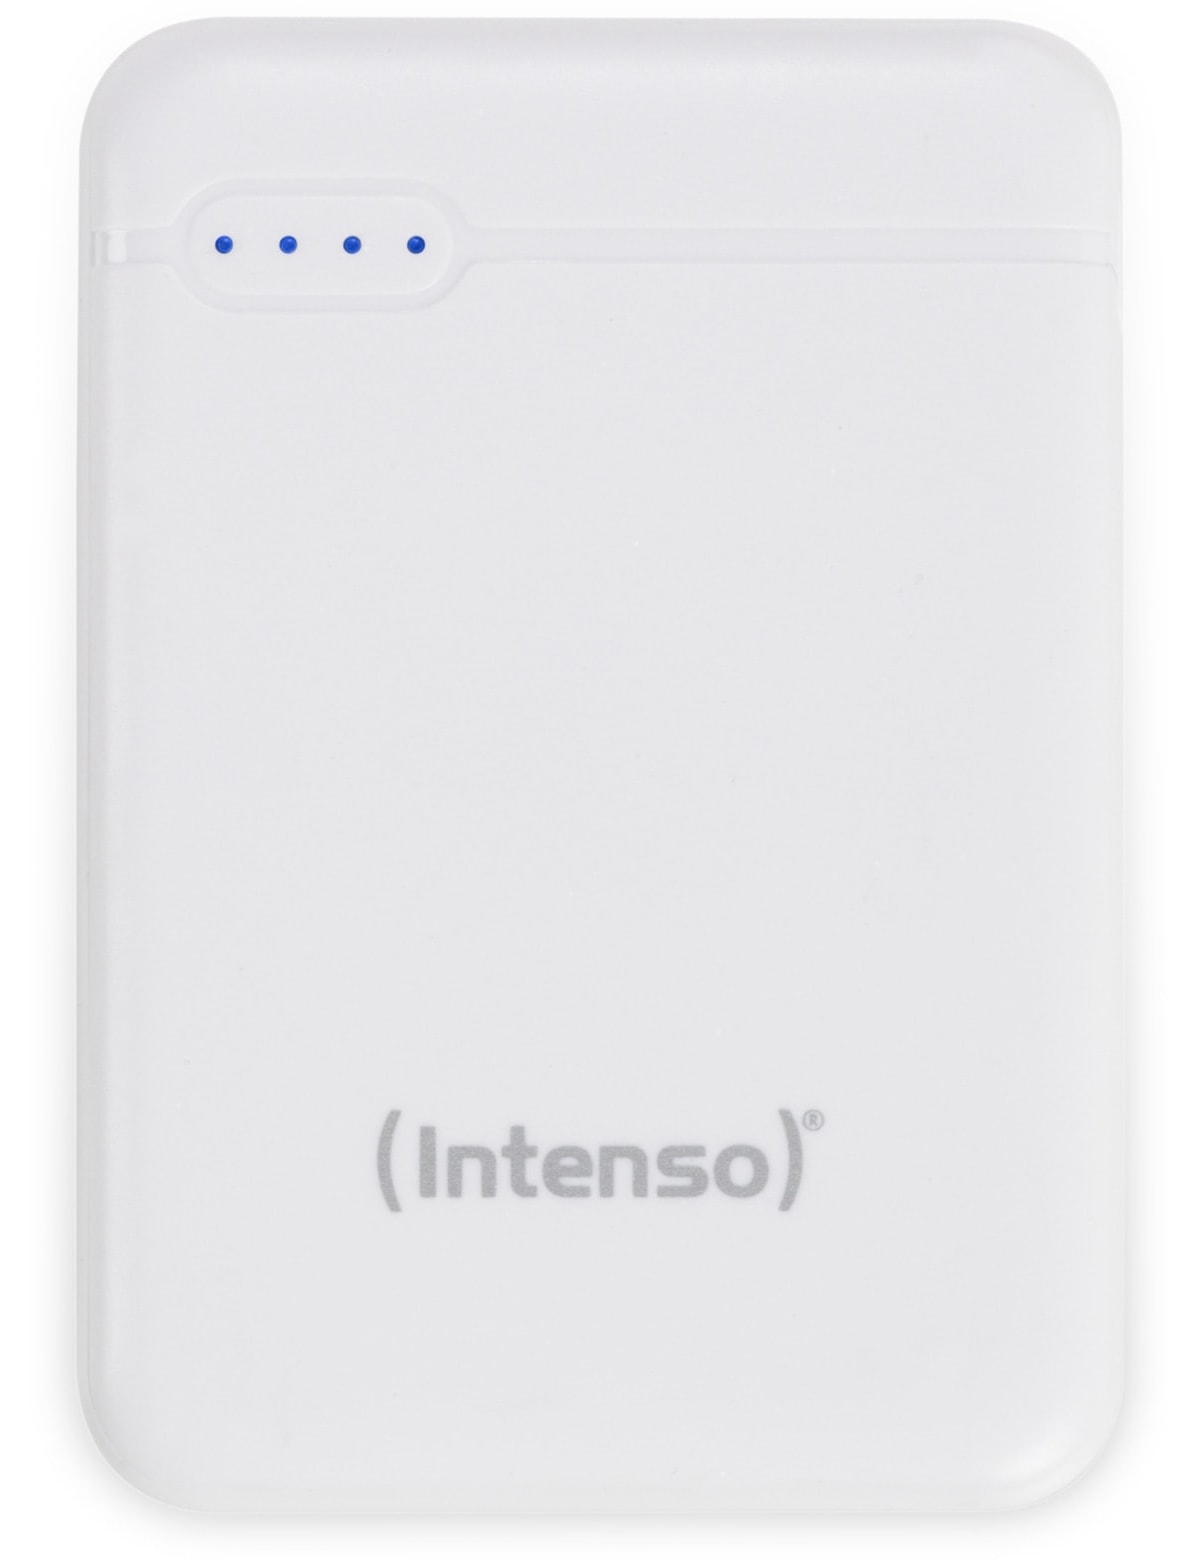 INTENSO USB Powerbank 7313522 XS 5000, 5.000 mAh, weiß